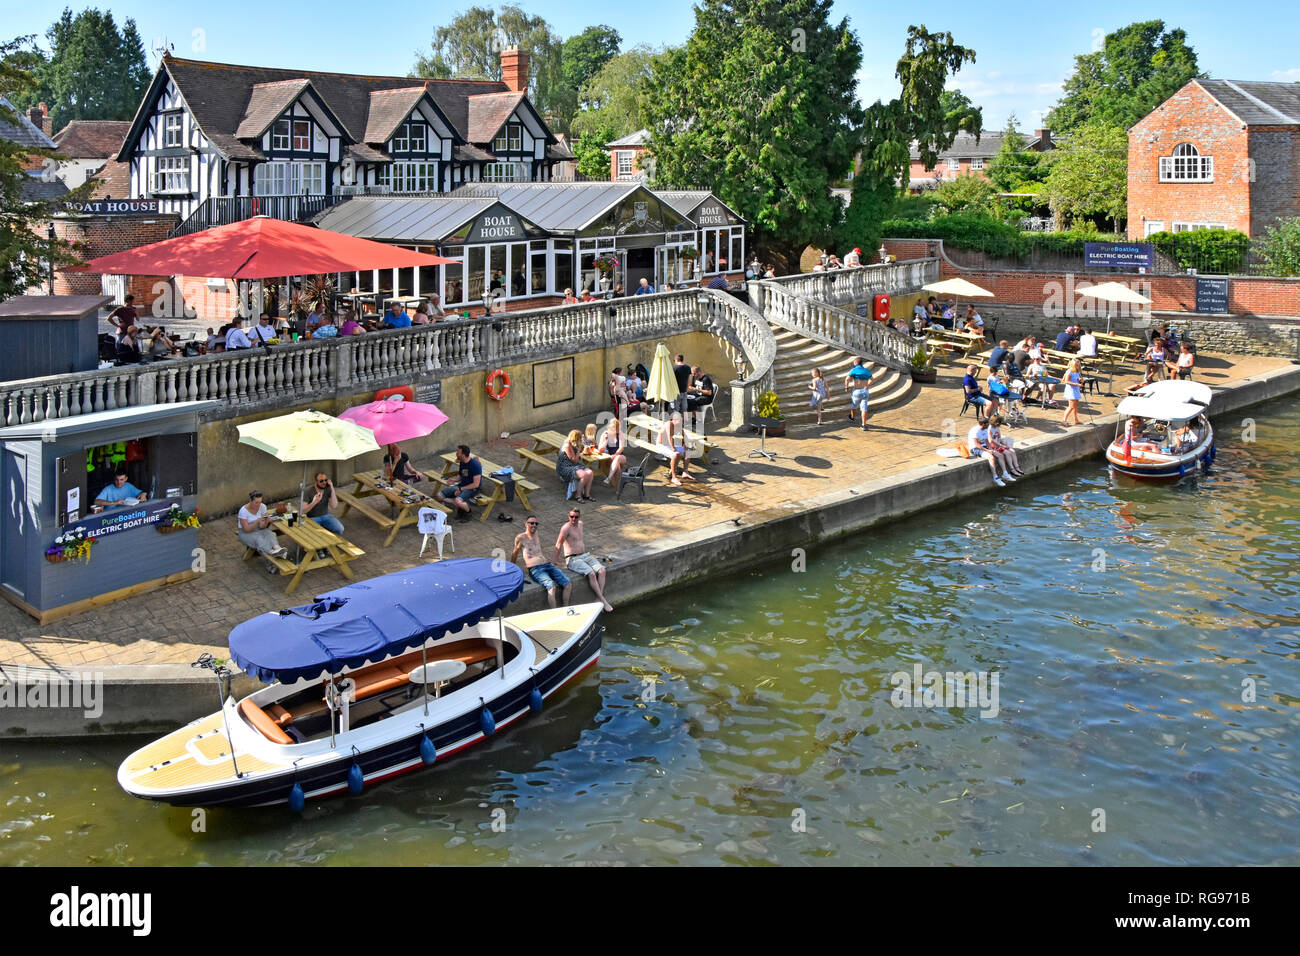 De haut en bas à la location de bateau électrique & pub business groupe diversifié, chaude journée d'été à Tamise Wallingford Oxfordshire England UK Banque D'Images